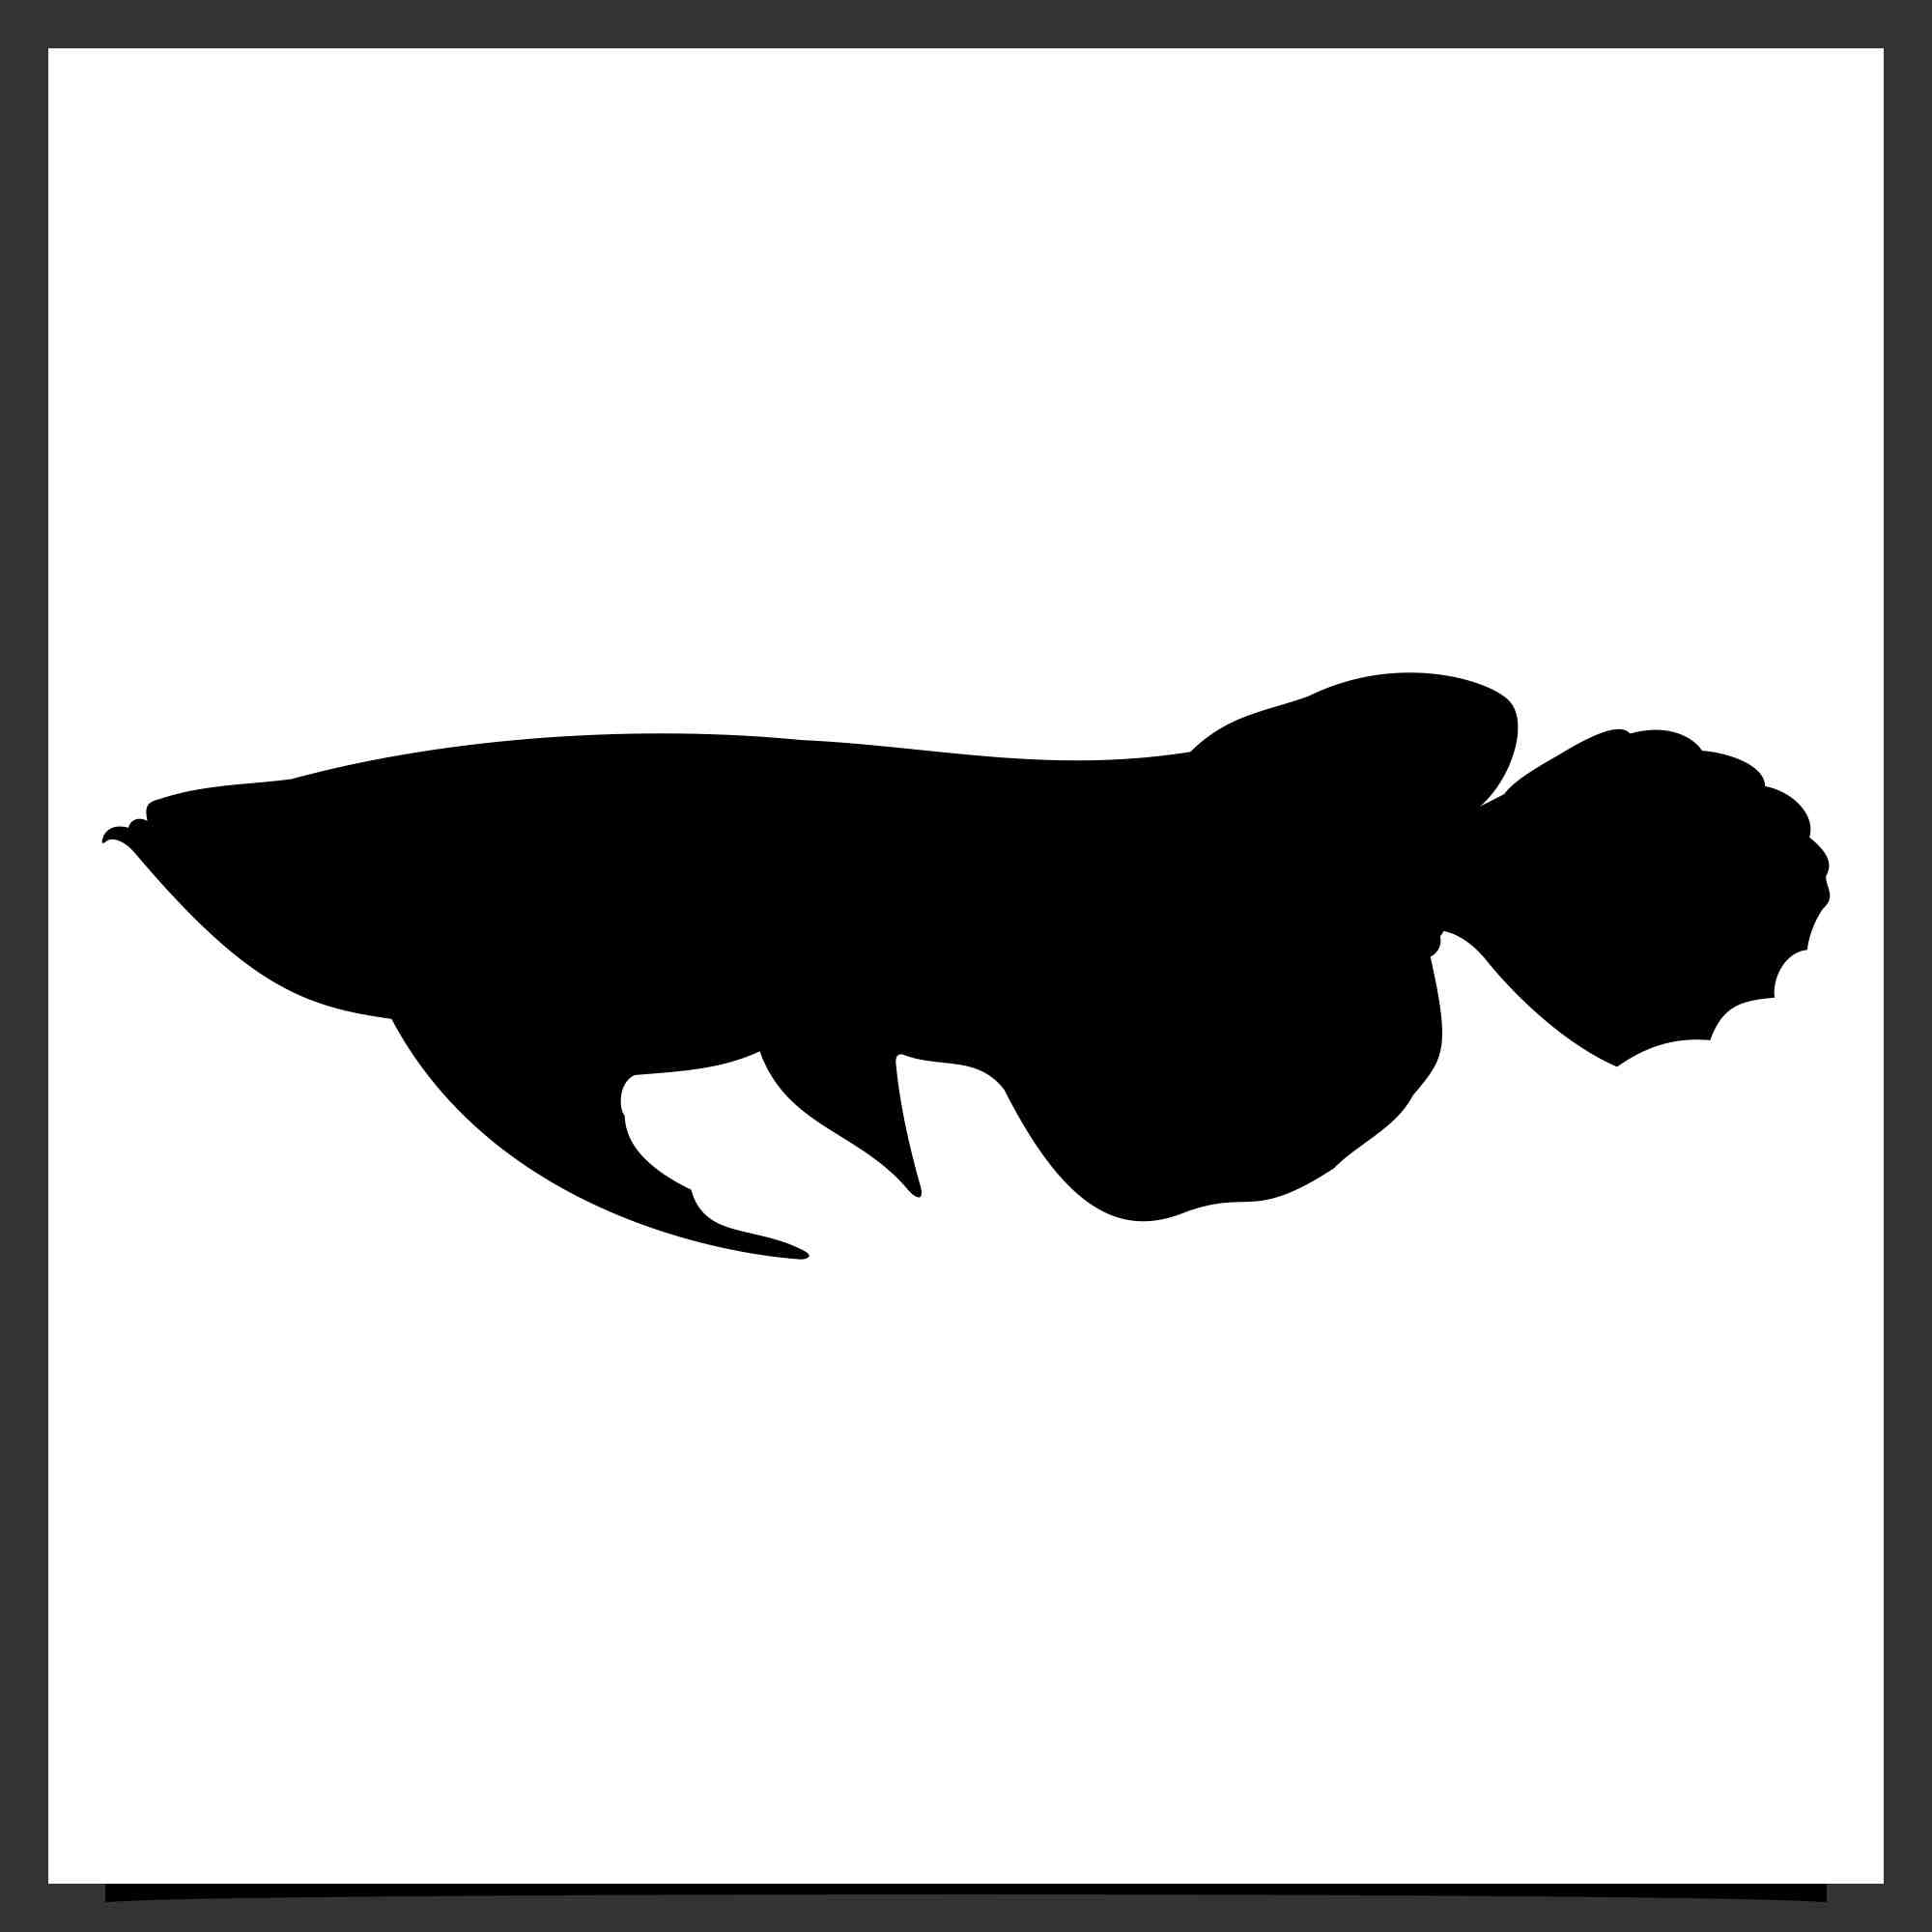 arowana fish vector silhouette design 3 476